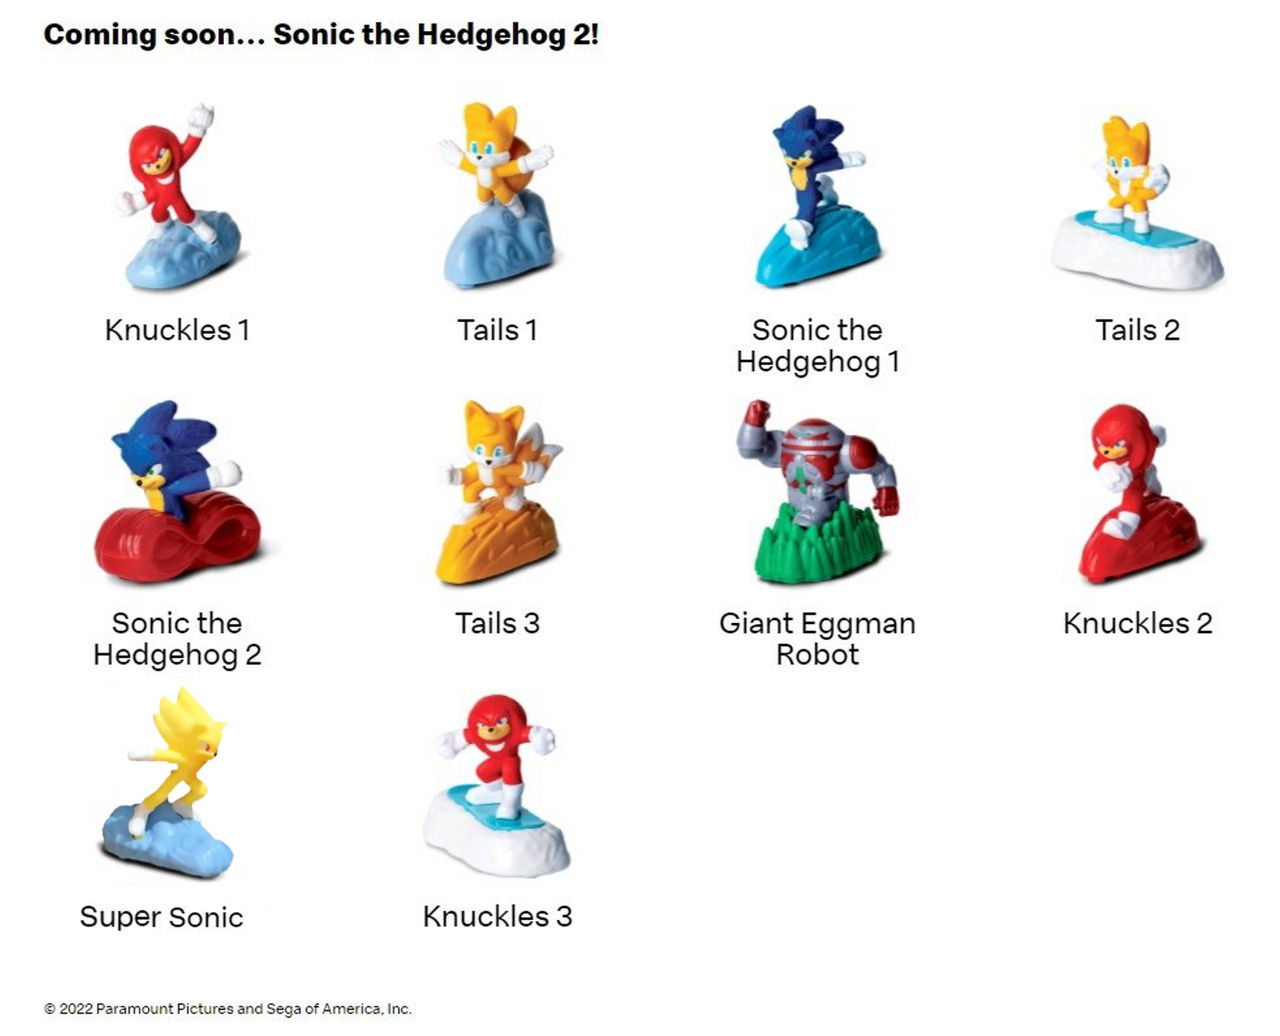 Sonic Movie 3 Poster by tailsgene19 on DeviantArt